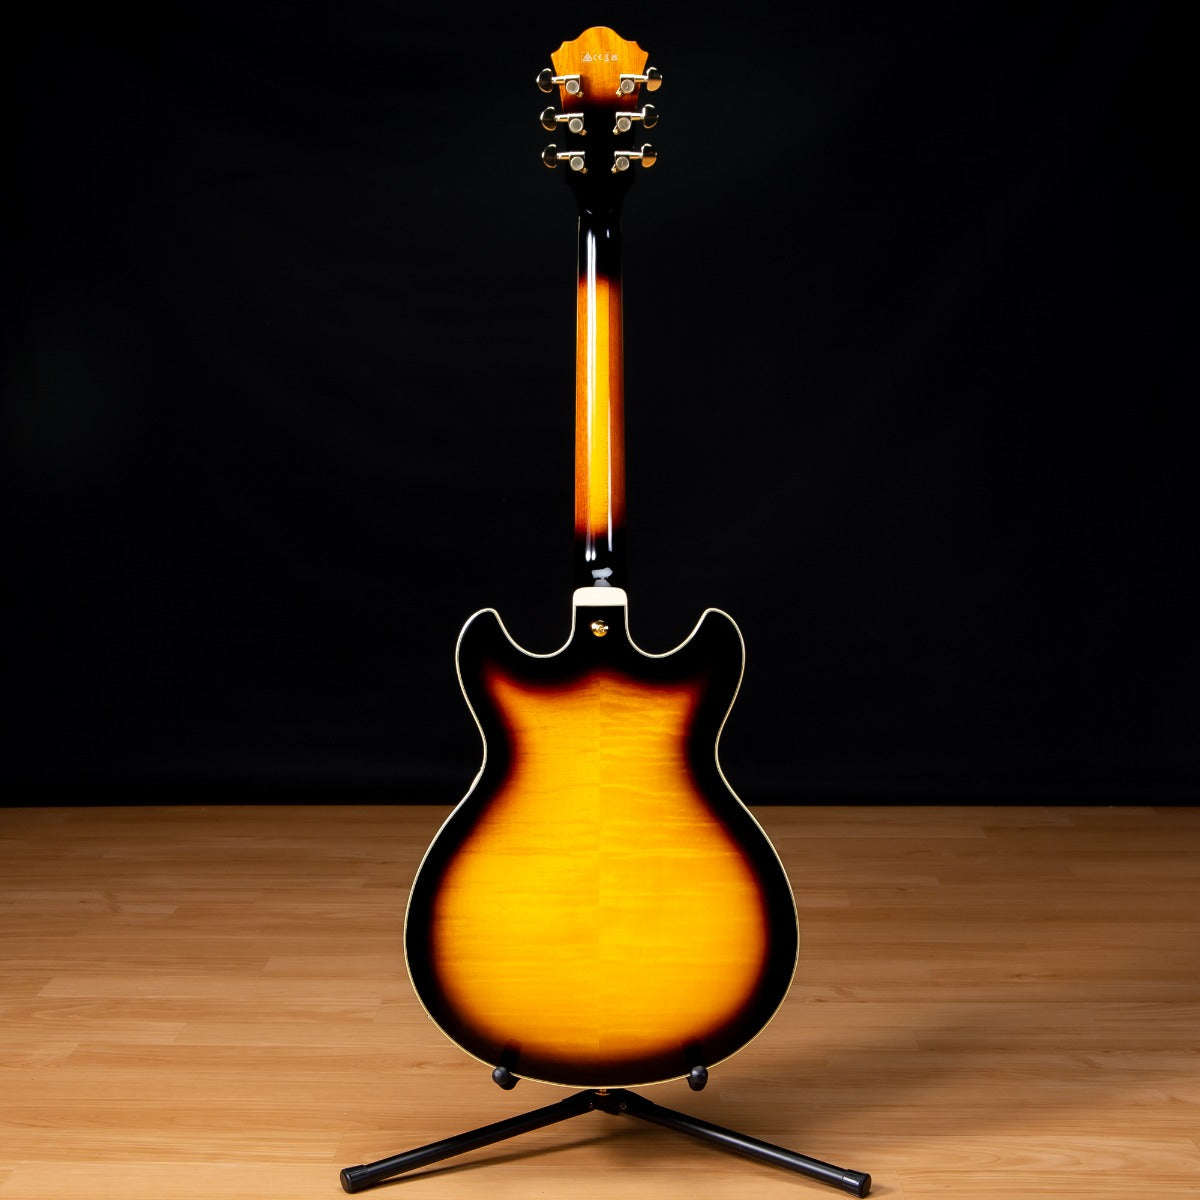 Ibanez AS93FM Artcore Expressionist Electric Guitar - Antique Yellow Sunburst view 12